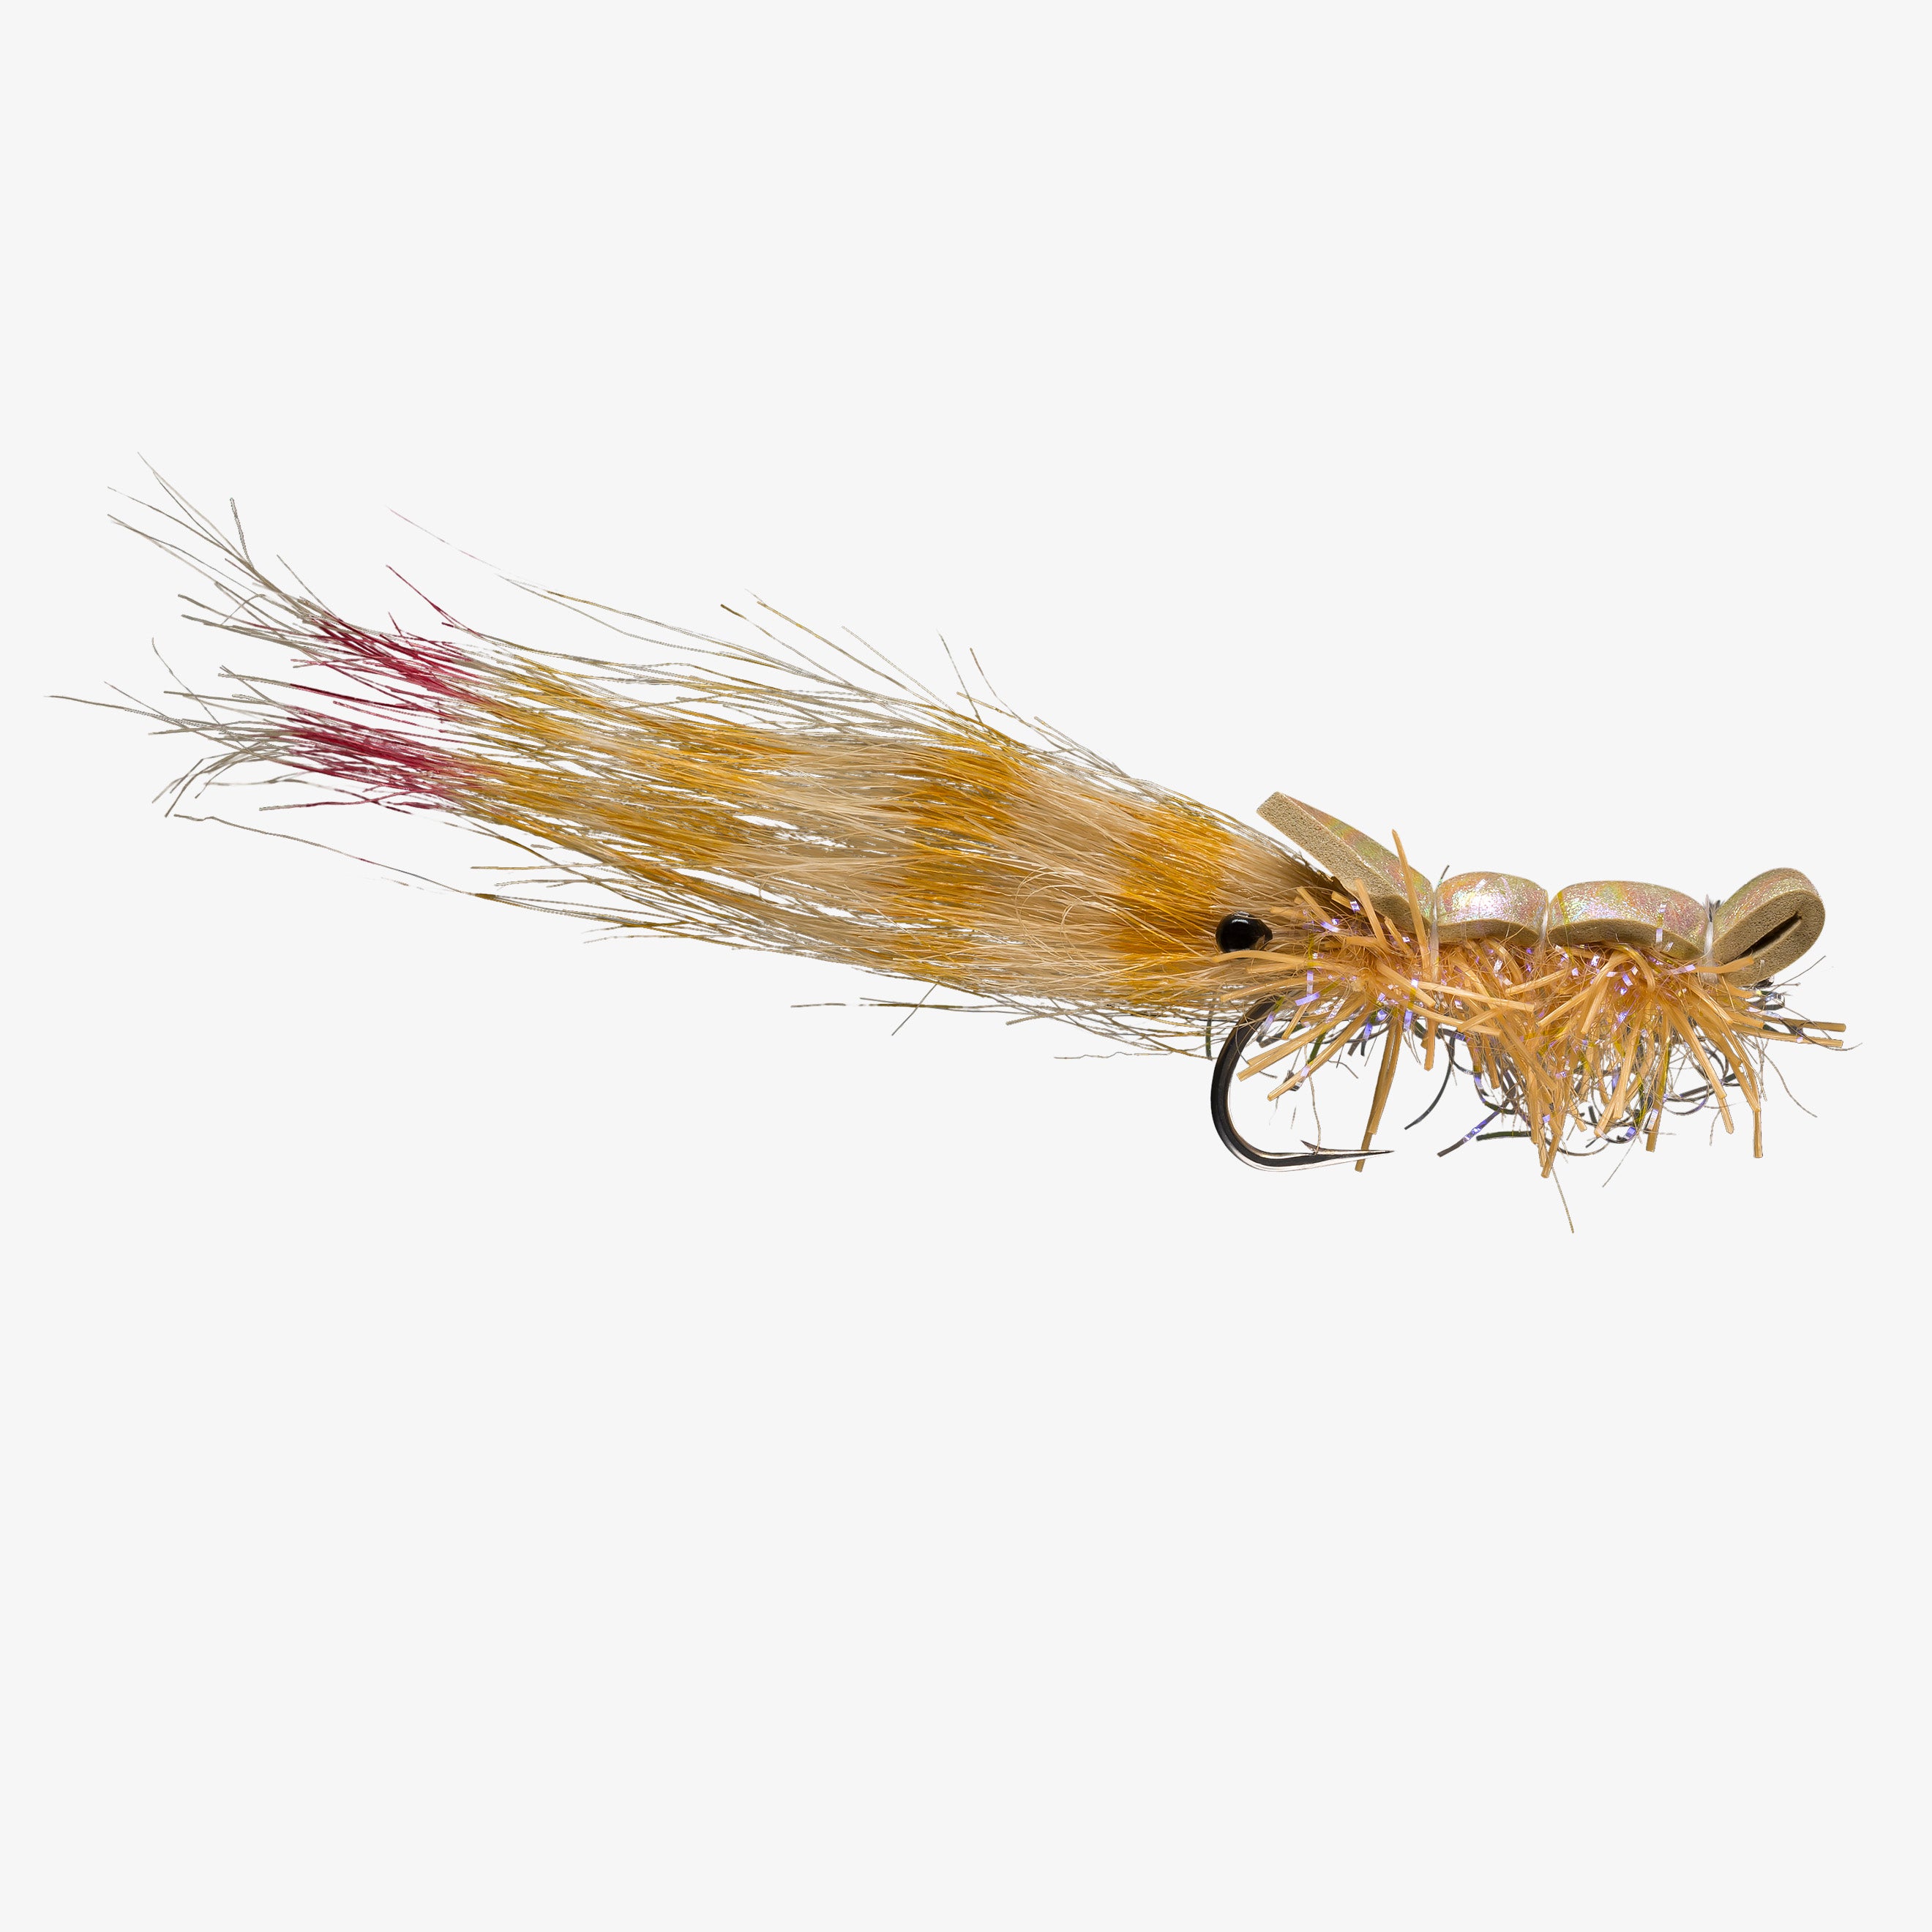 Pat Ehlers' Grand Slam Shrimp, Saltwater Shrimp Fly Patterns